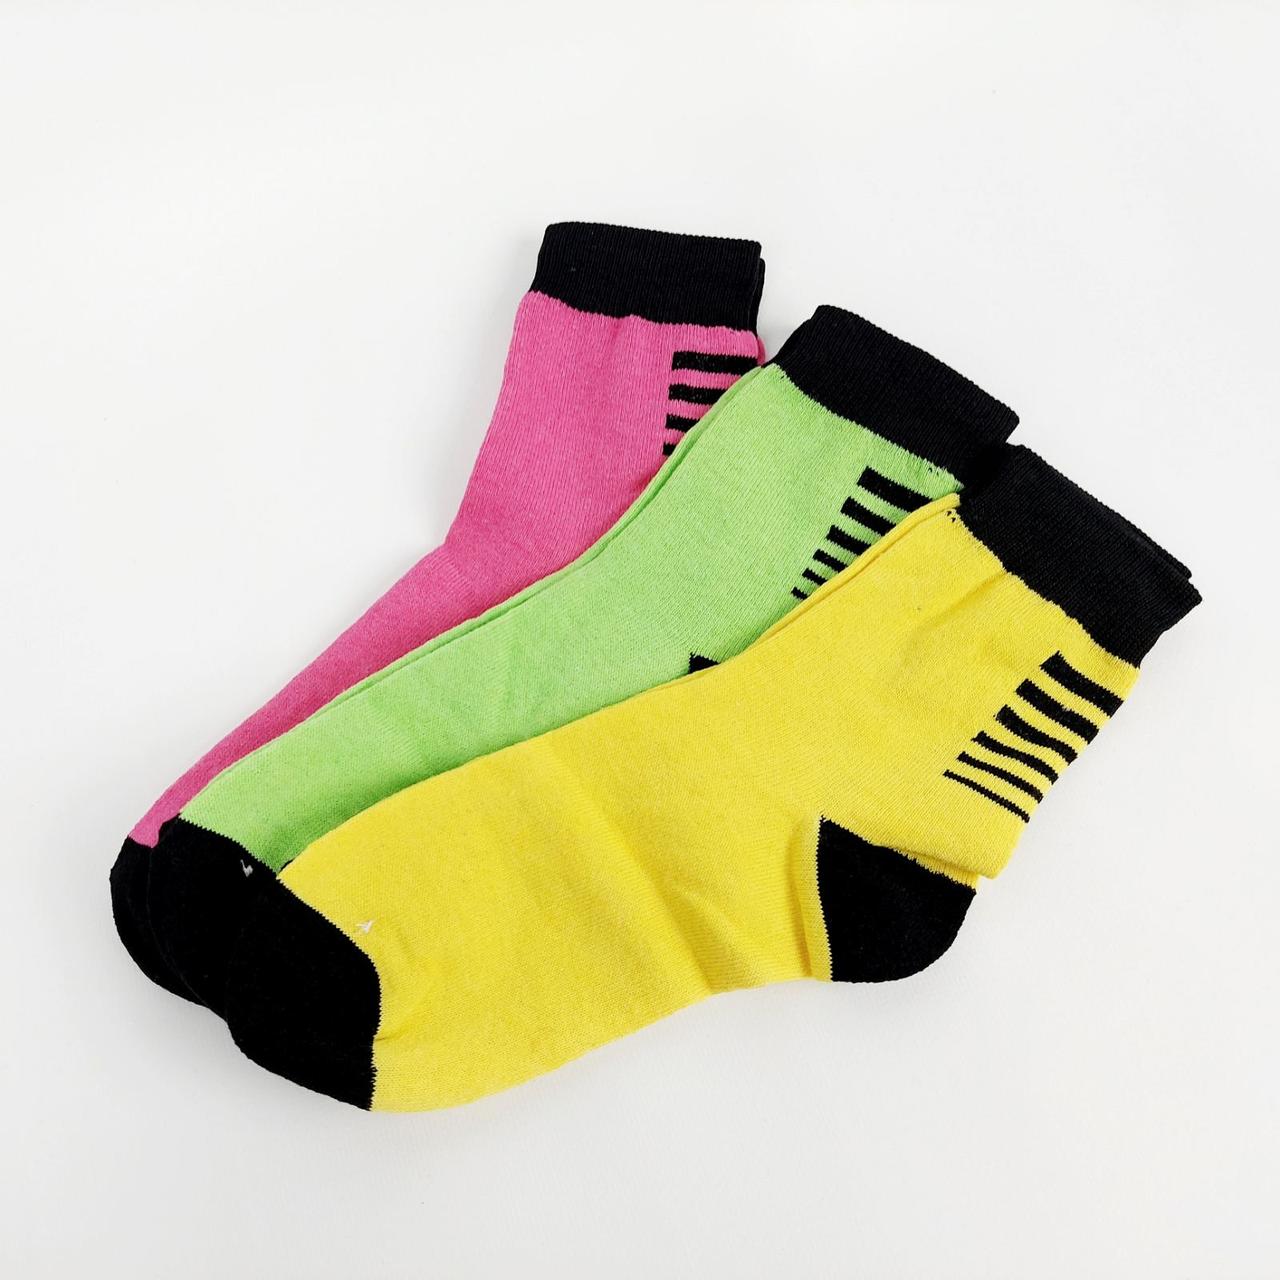 Бавовняні демісезонні шкарпетки в наборі 3 пари, яскравих кольорів, жіночі, 36-41 розмір